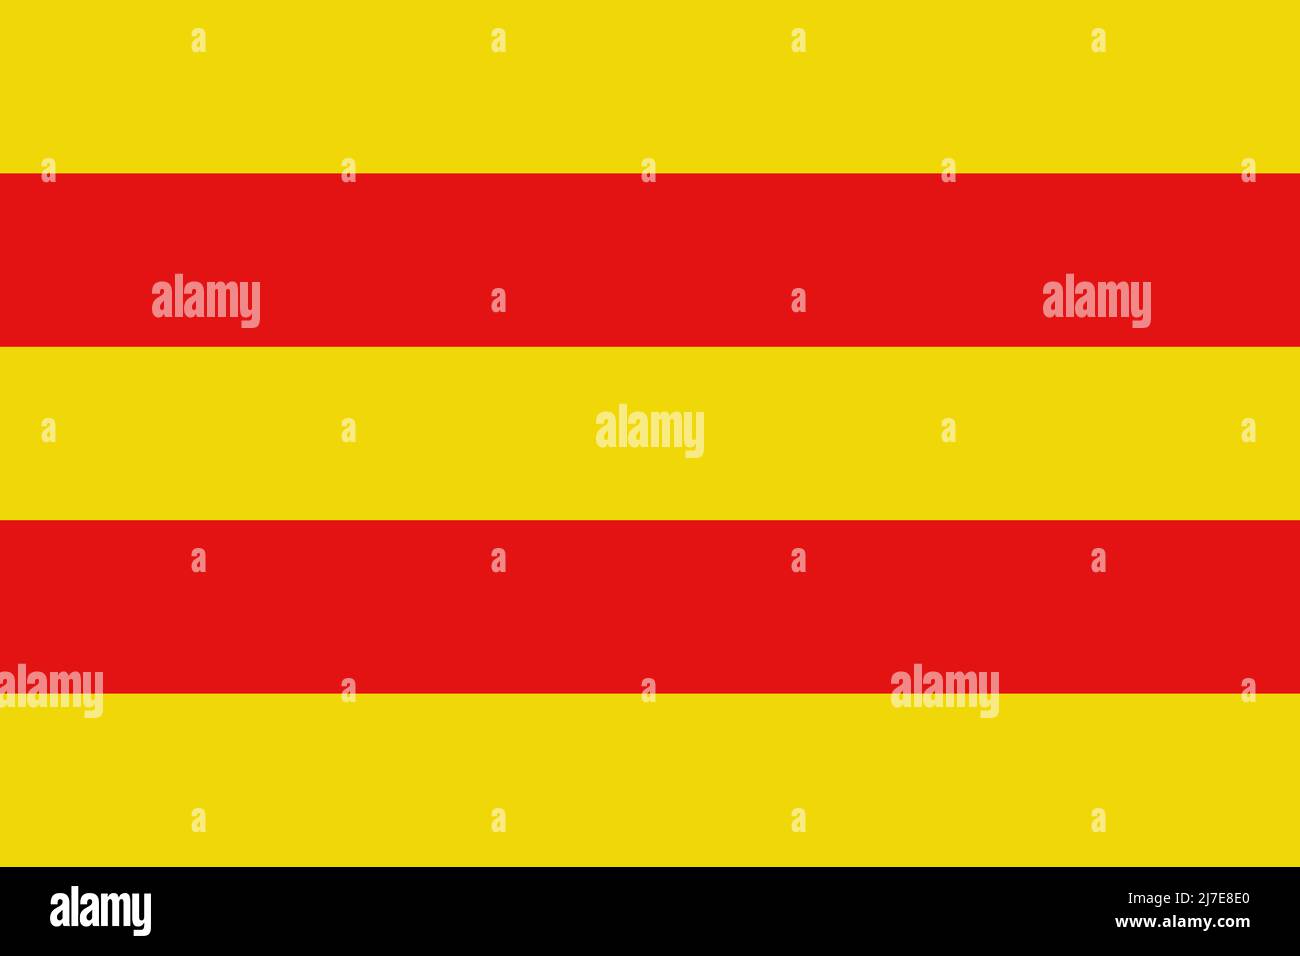 Draufsicht auf die Flagge Dilsen Stokkem, Belgien. Belgisches Reise- und Patriot-Konzept. Kein Fahnenmast. Ebenenlayout, Design. Hintergrund markieren Stockfoto